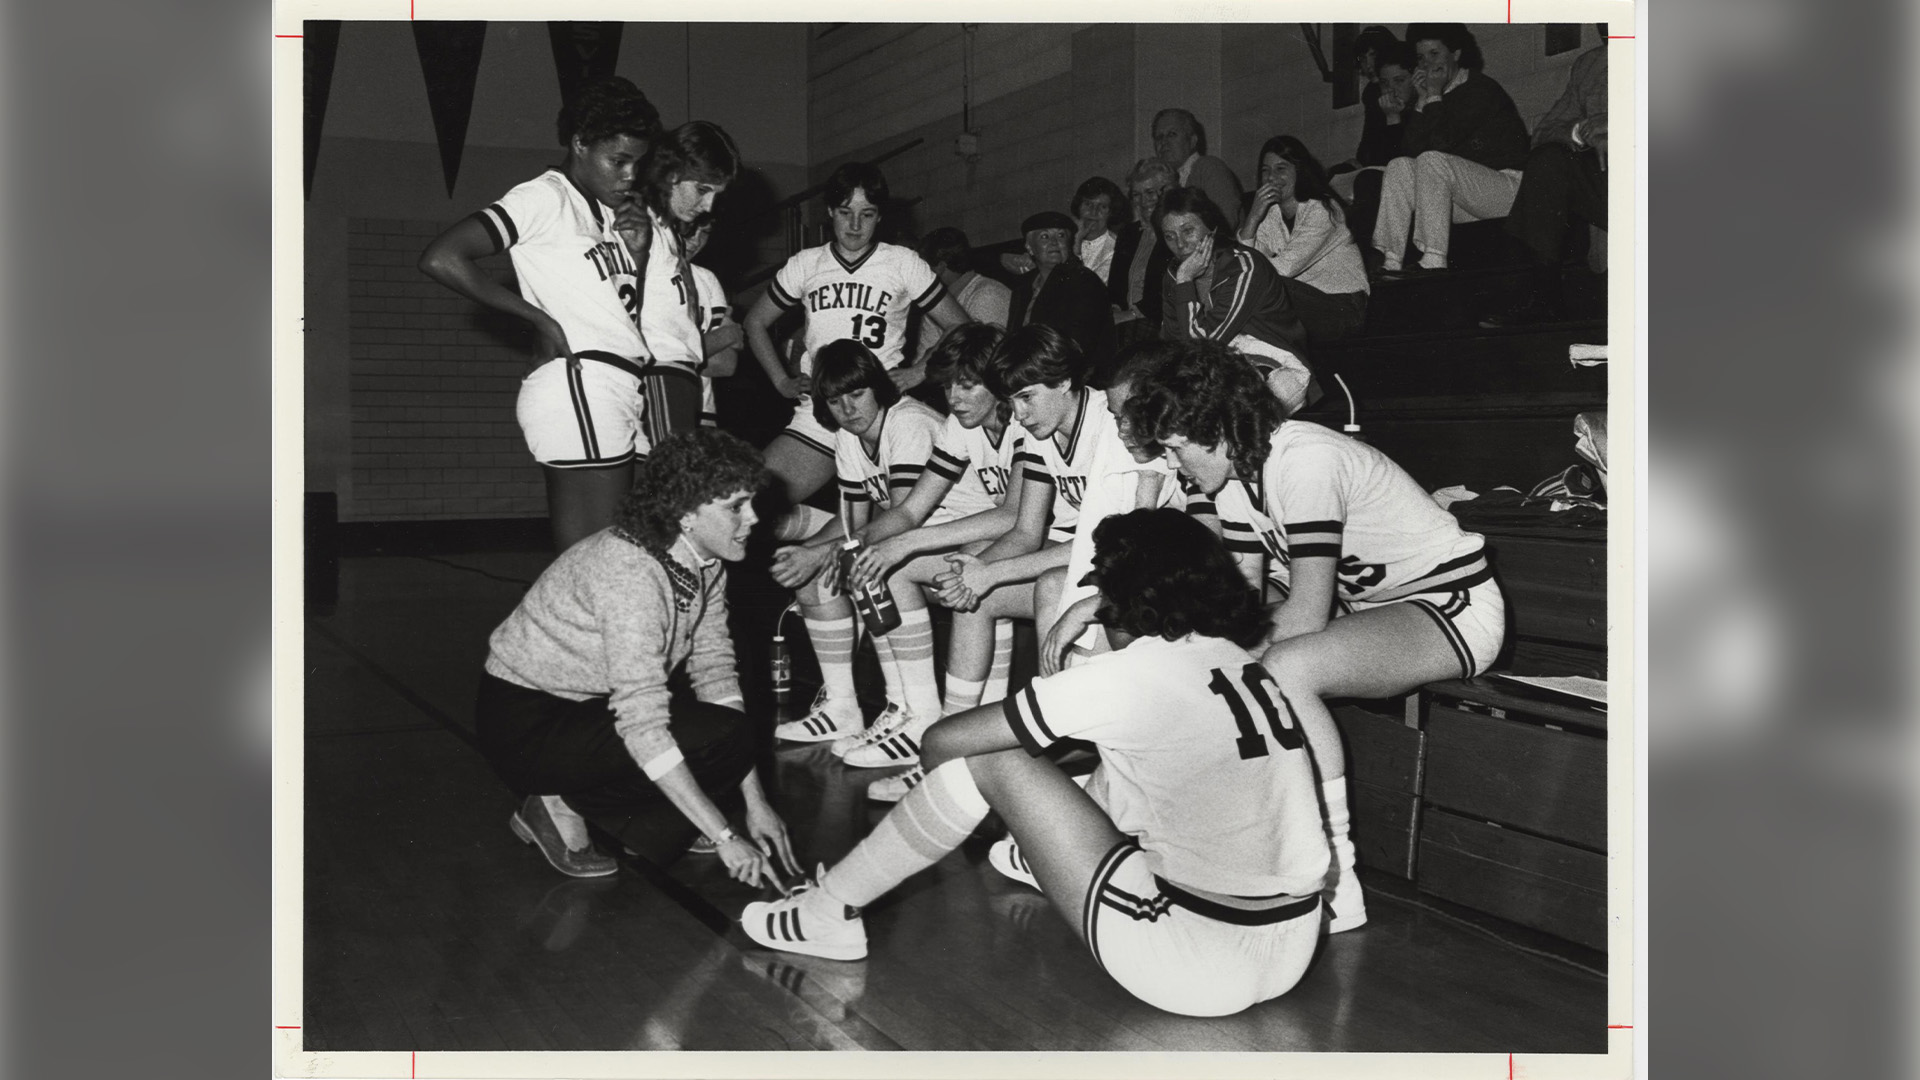 Women's "Textile" basketball team, circa 1980s.